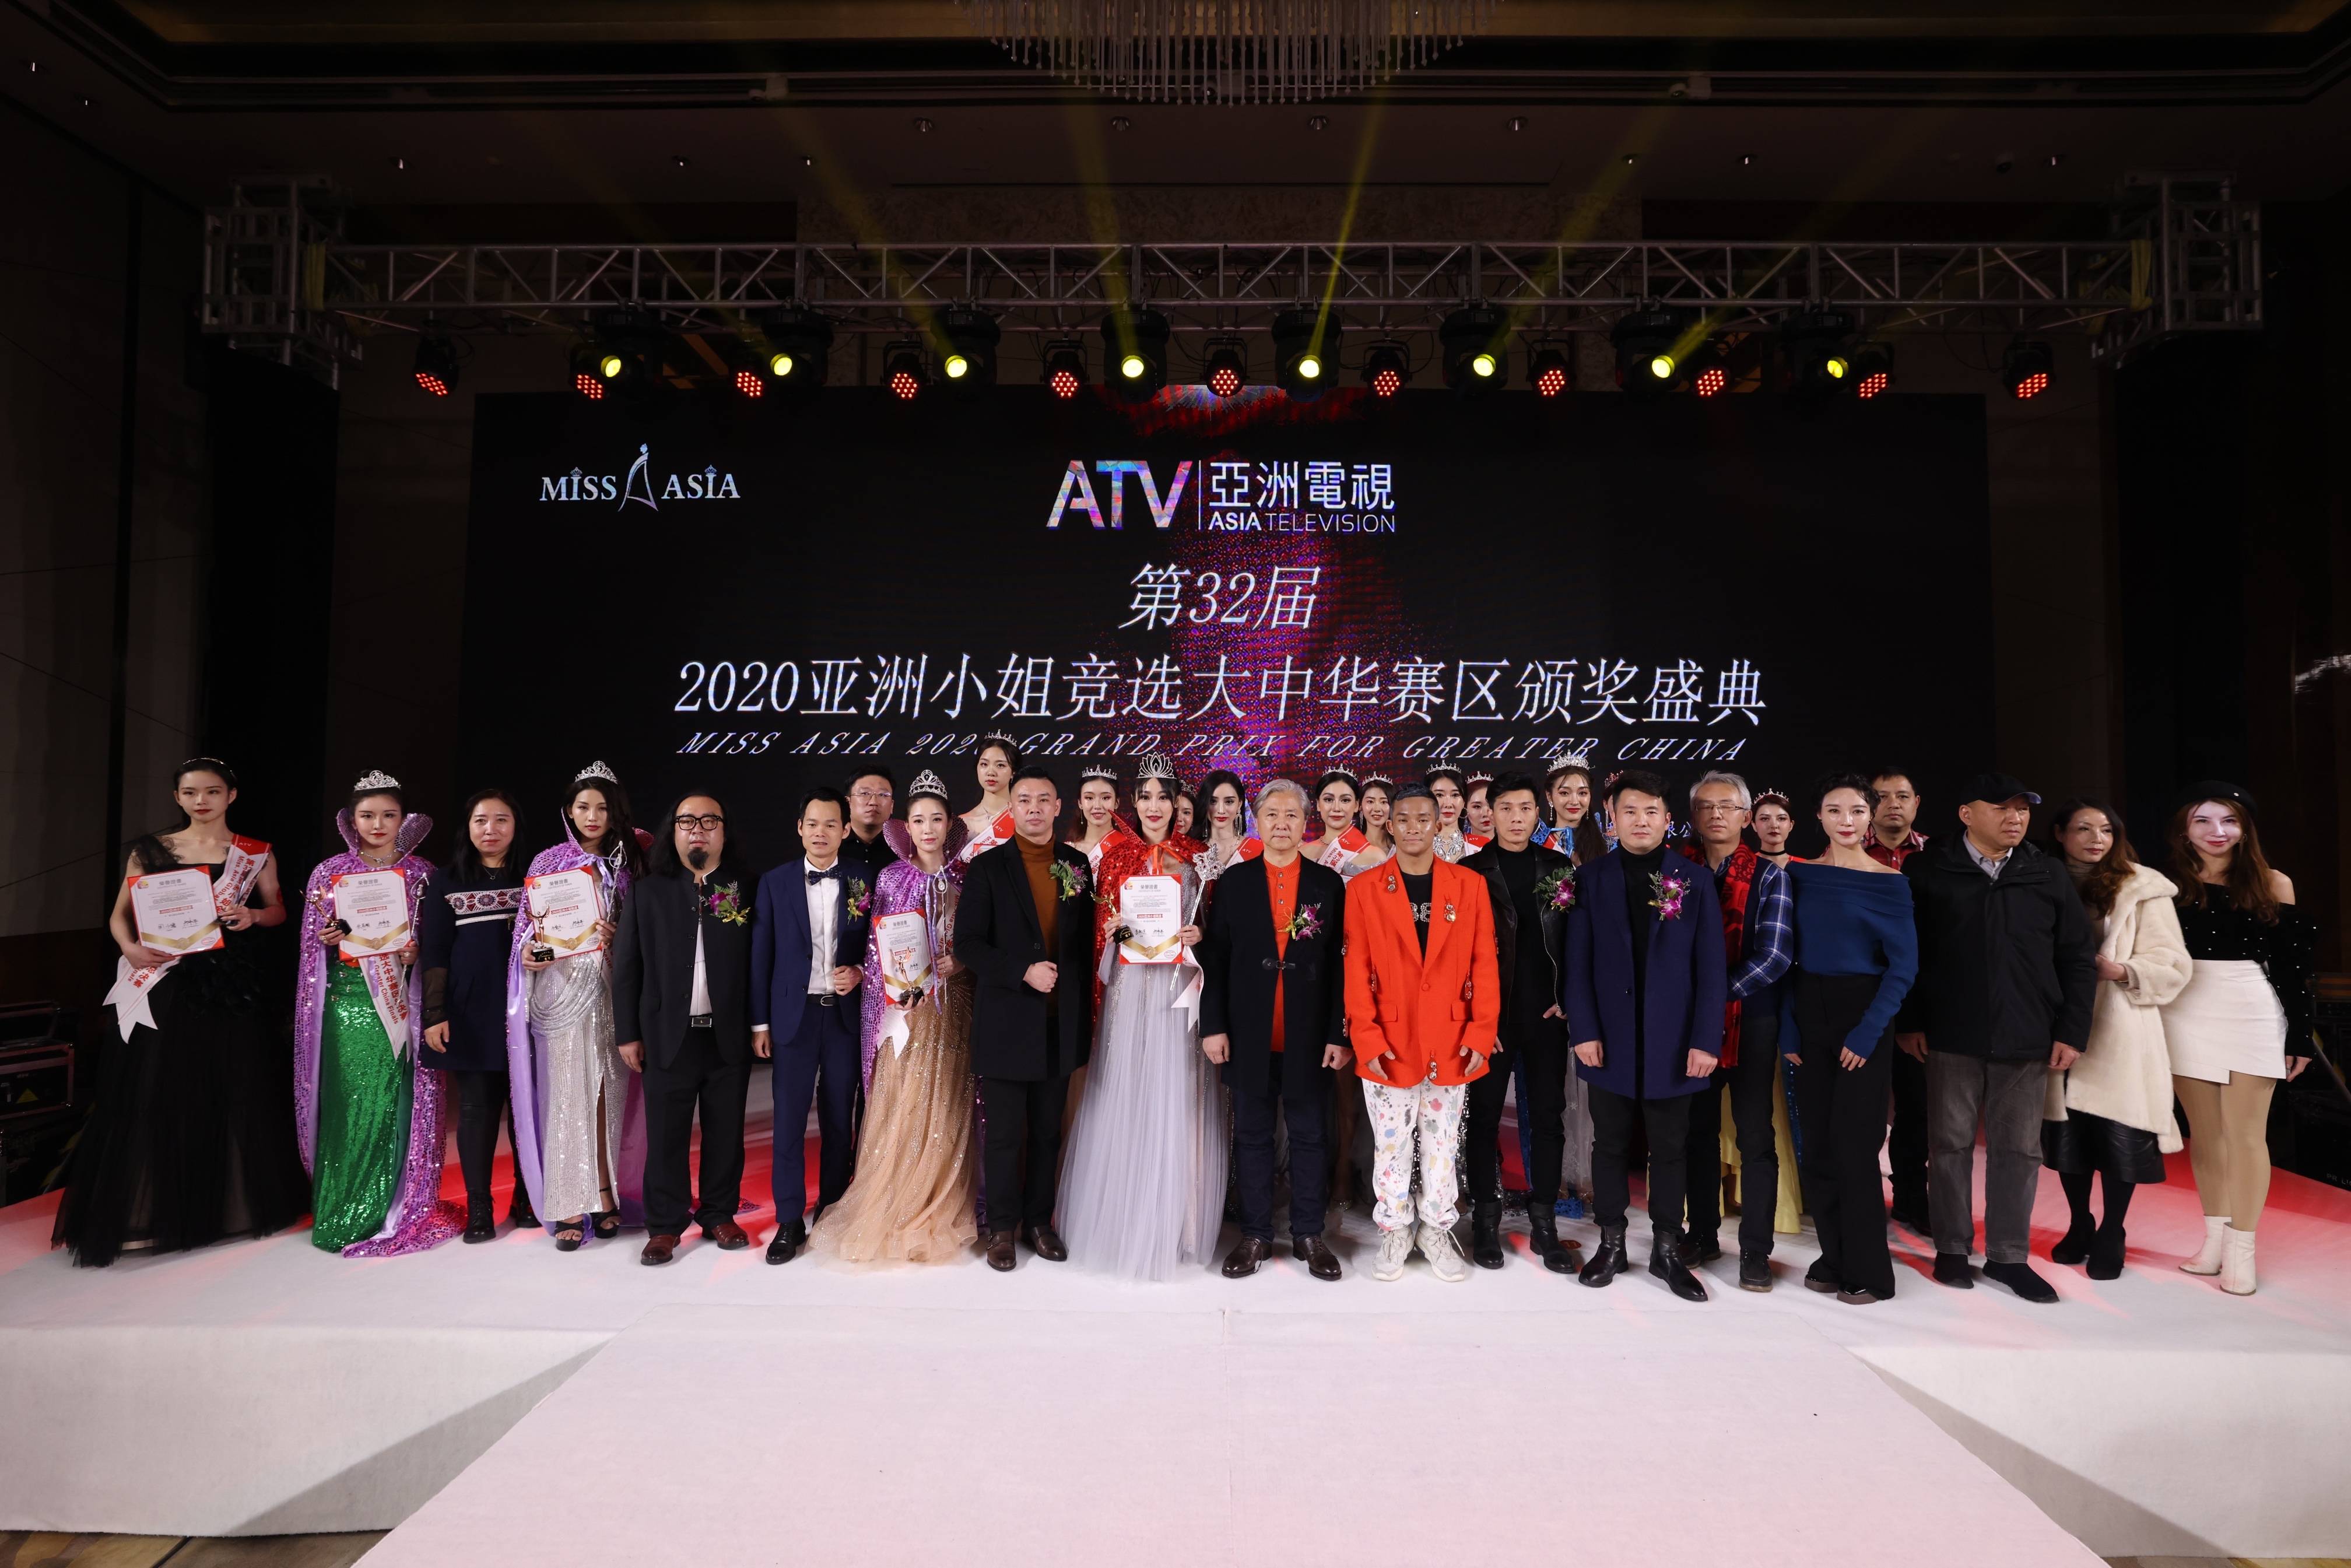 李初宣荣获2020年第32届亚洲小姐大中华区总决赛冠军 颁奖现场大放光彩